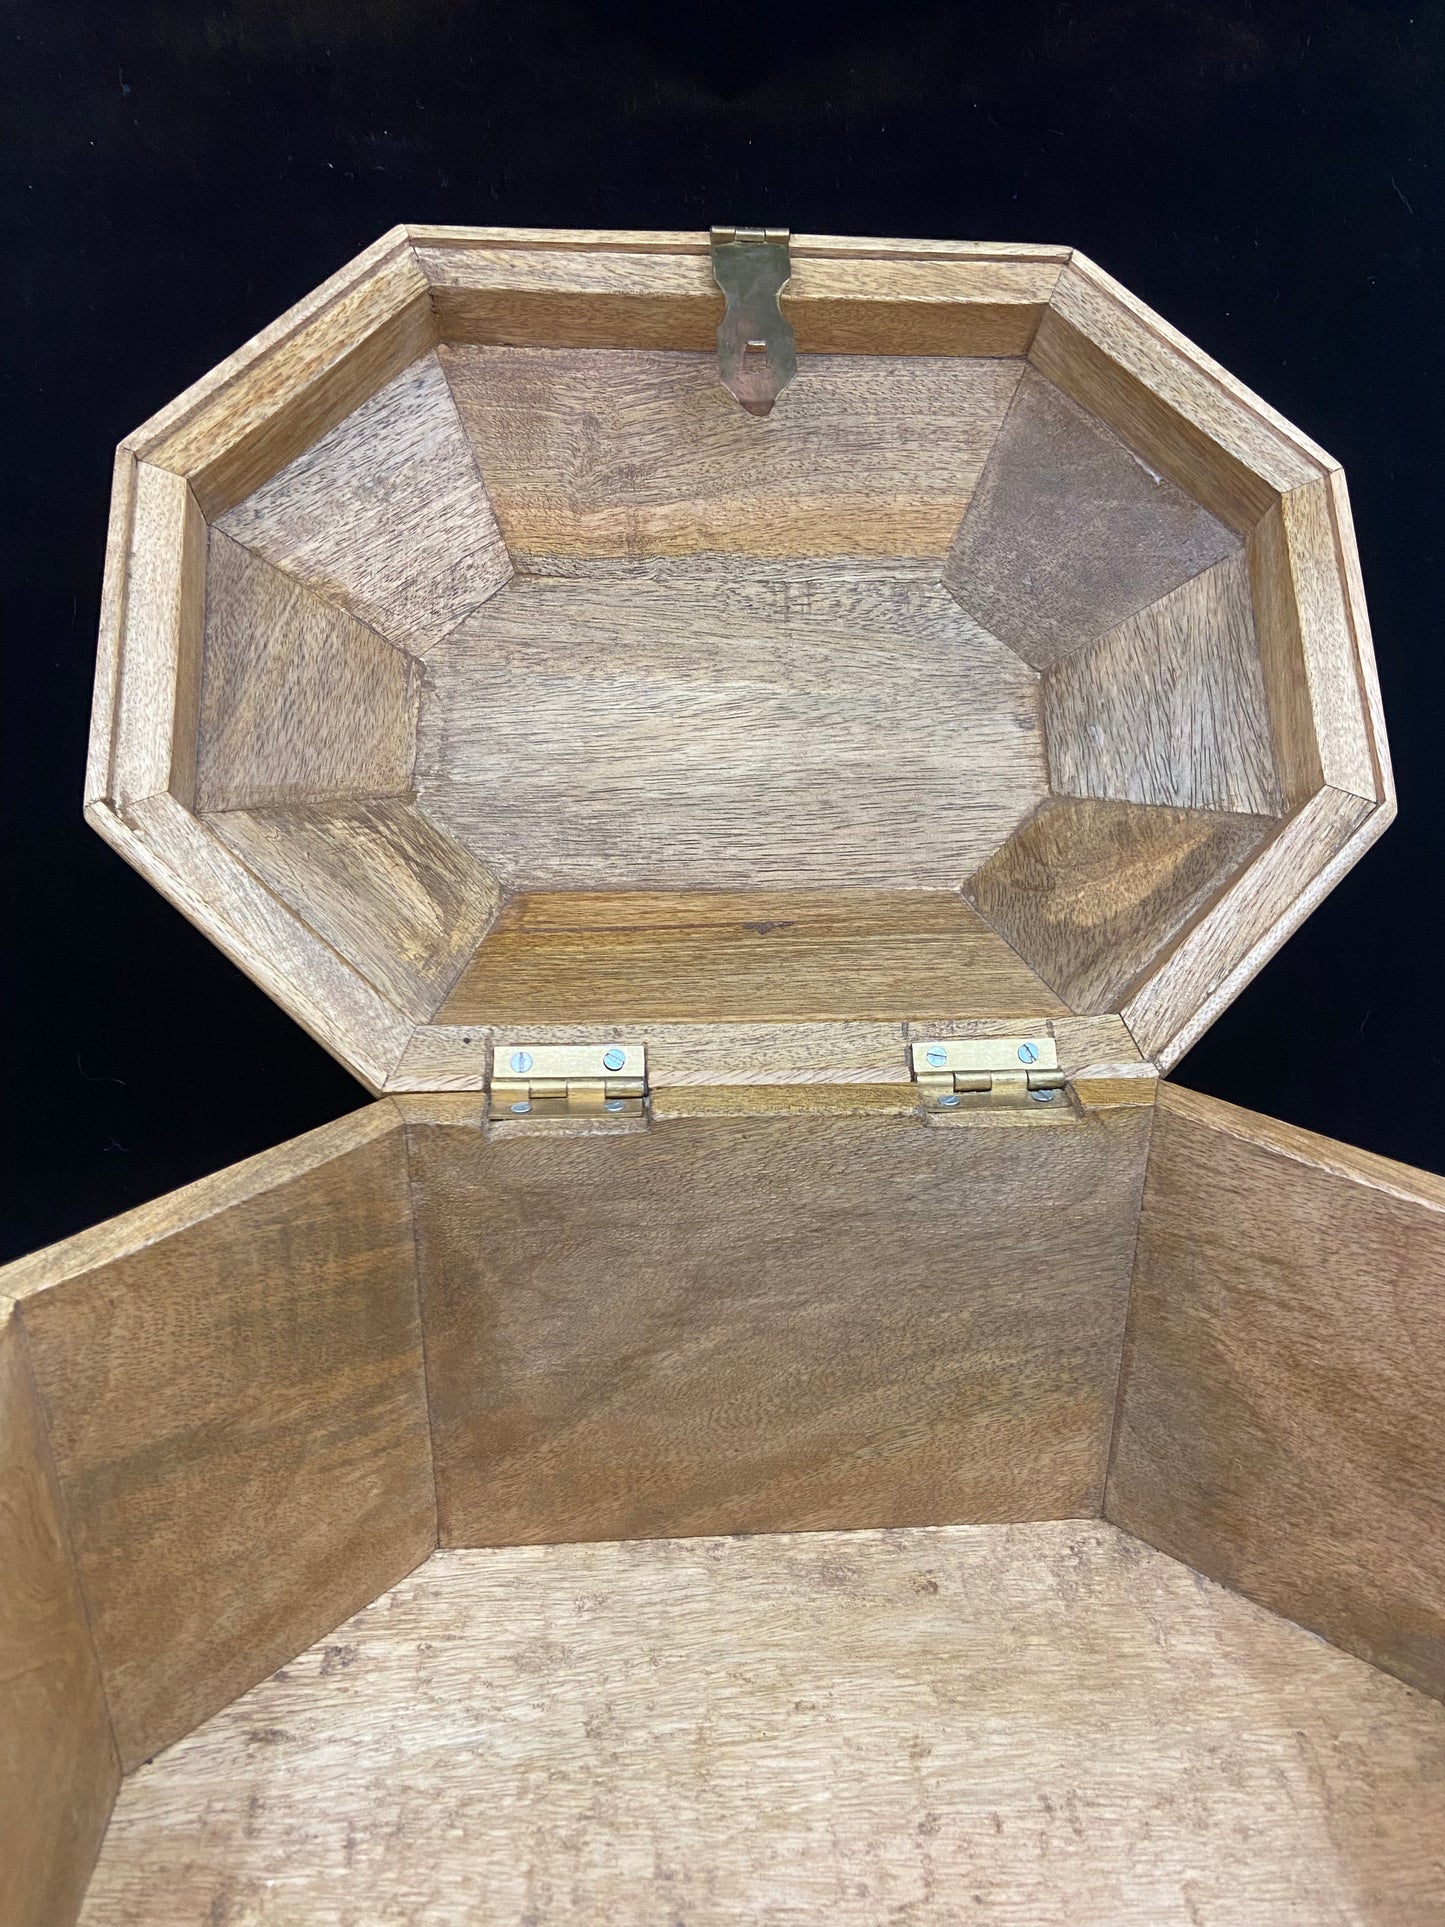 Octogen Wooden Box (25078)